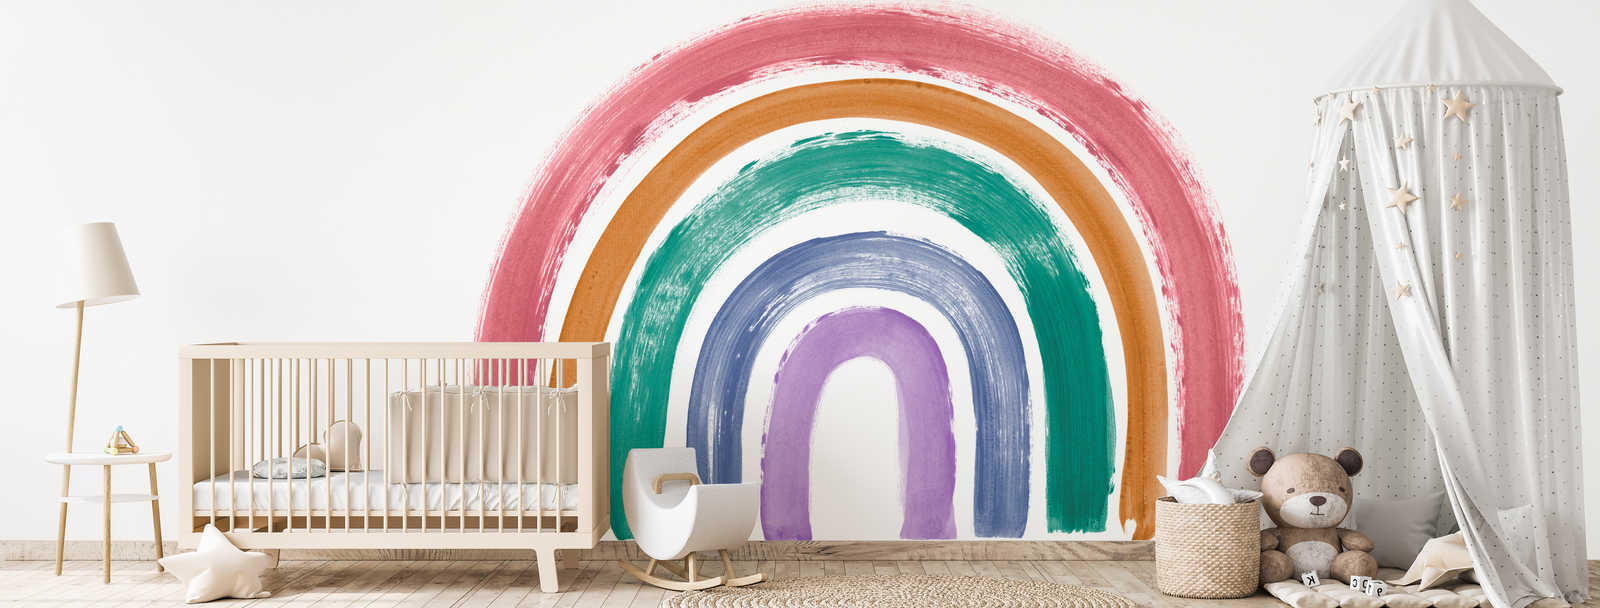             Mural arco iris en colores brillantes y retro
        